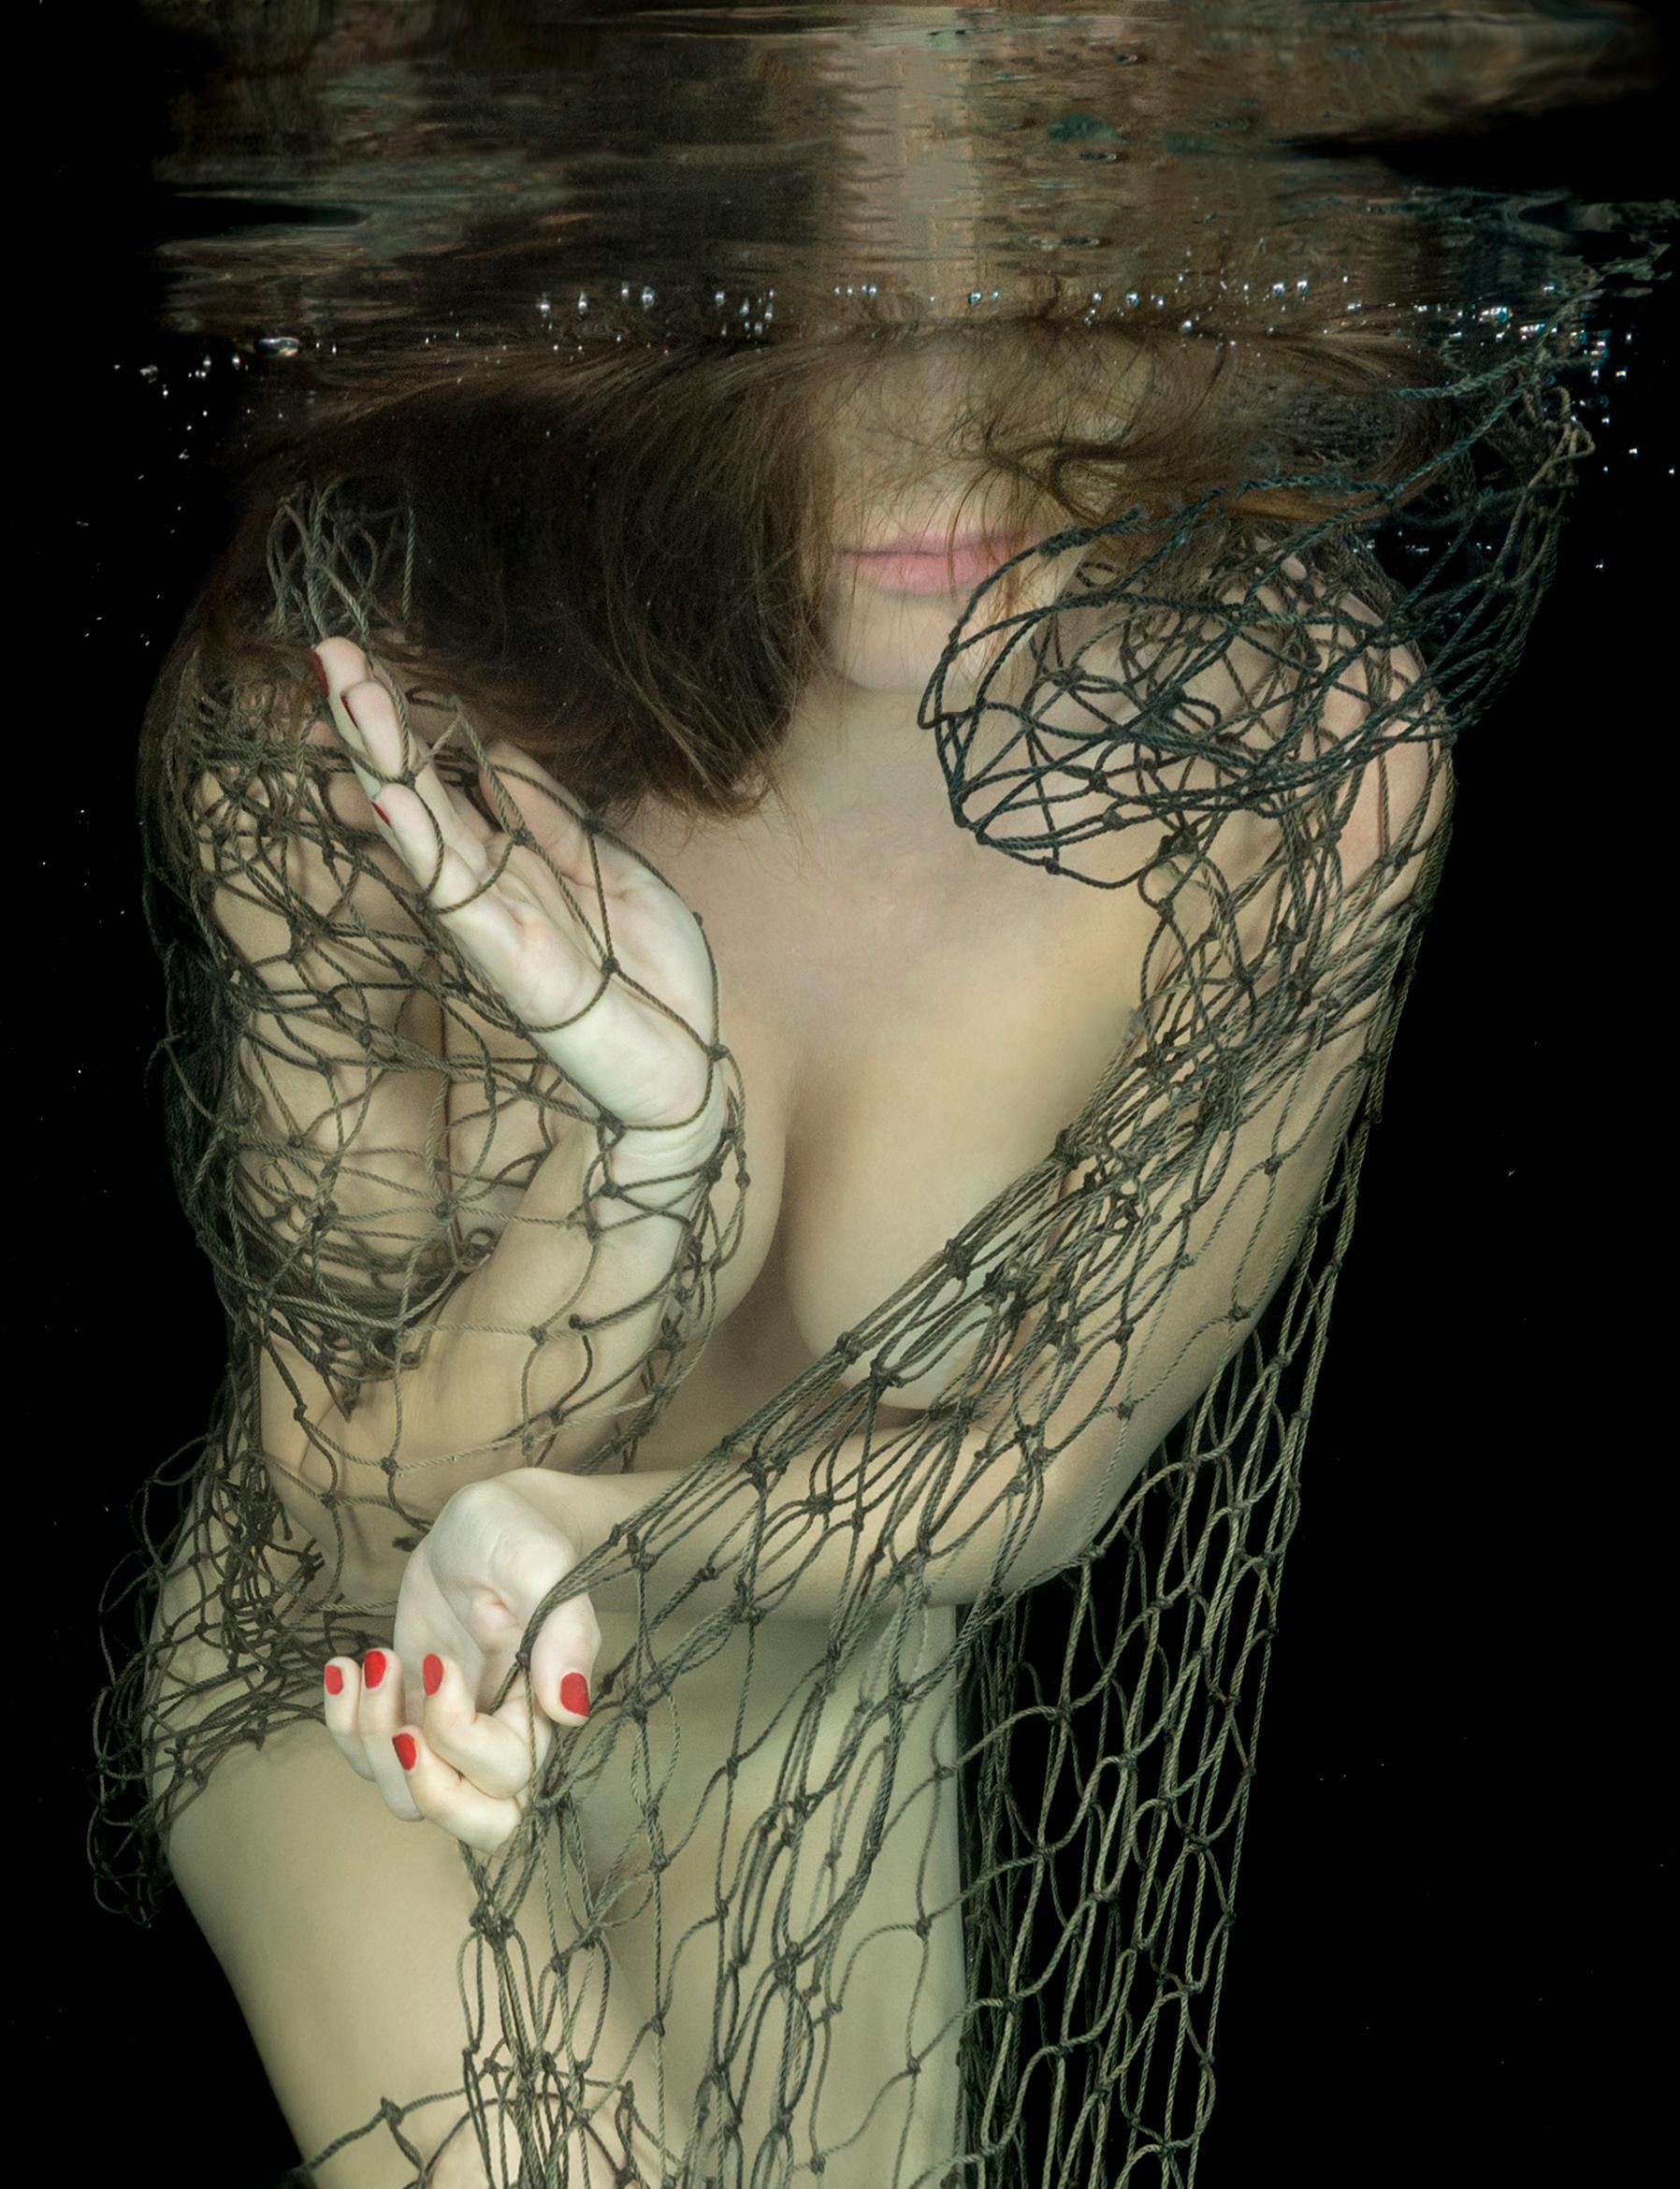 Lucky Catch – Aktfotografie im Unterwasser – archivtauglicher Pigmentdruck 58" x 43"